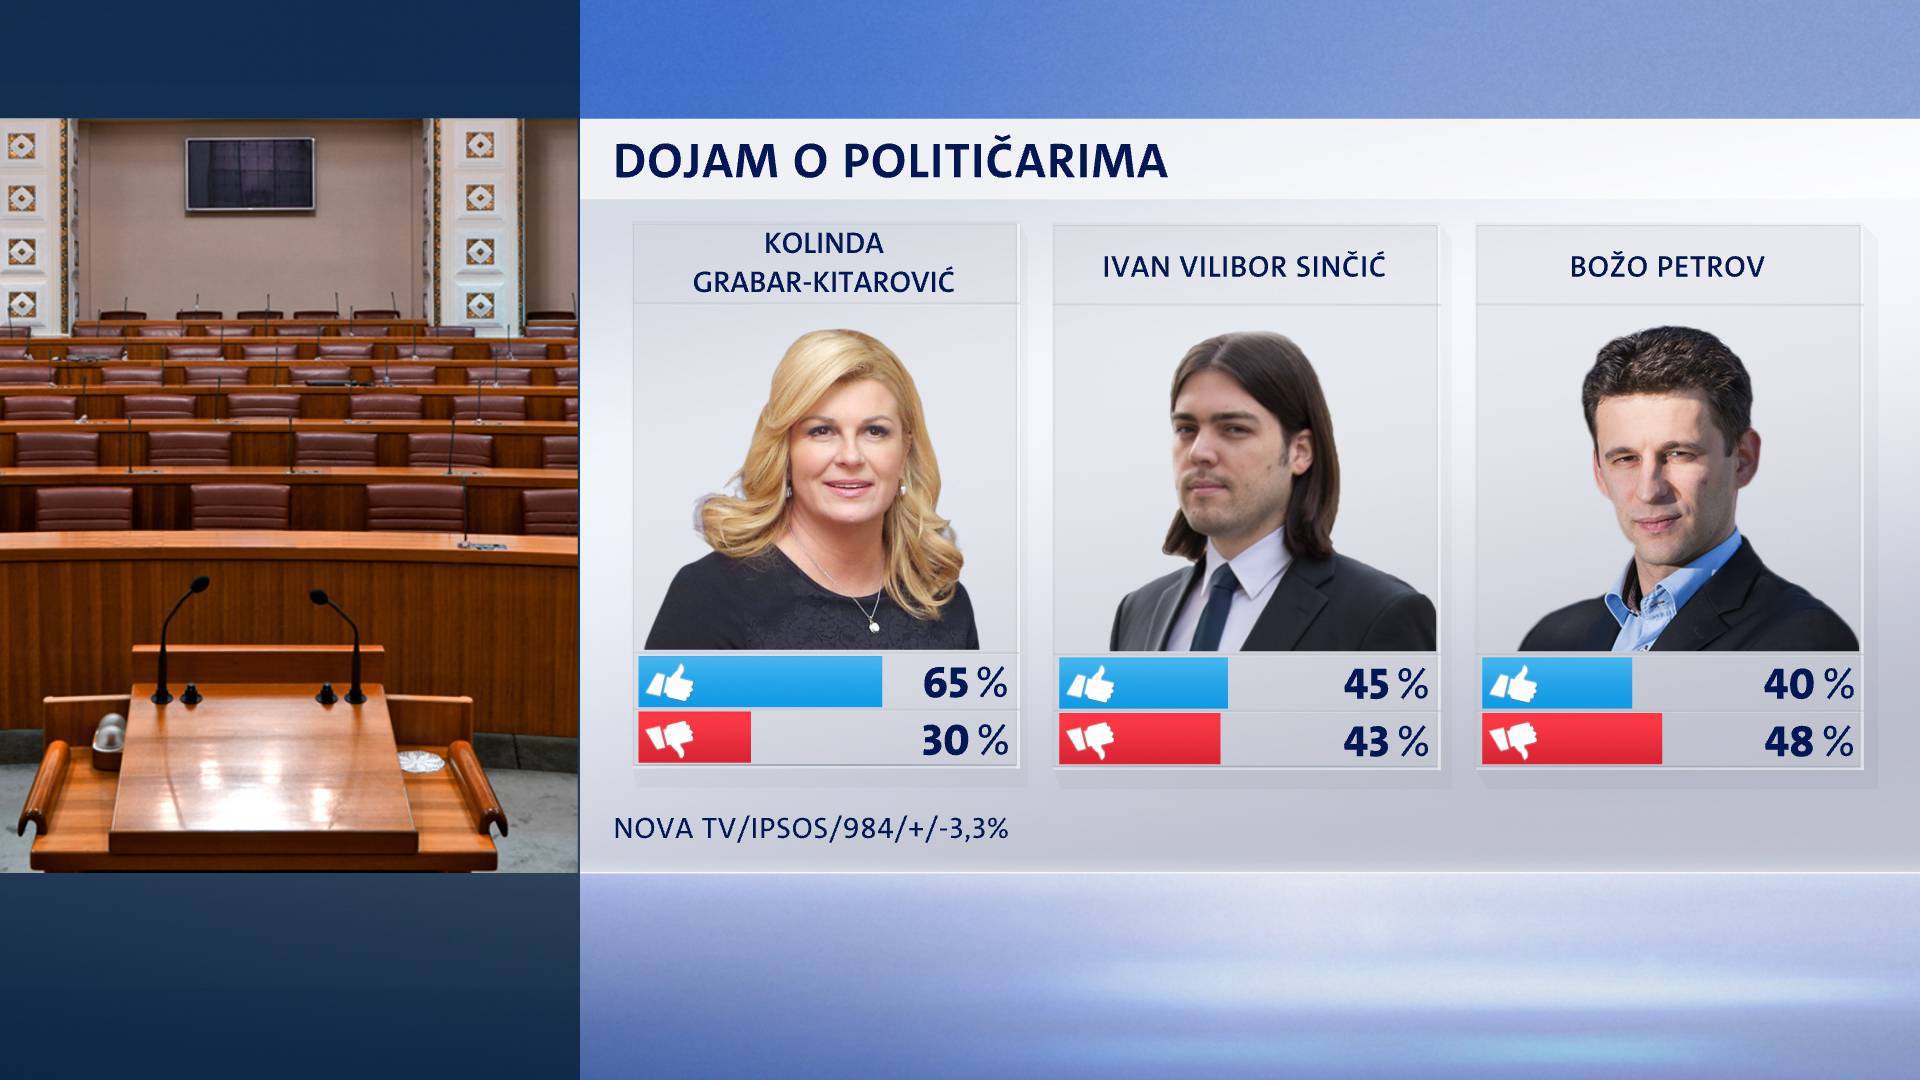 Najpopularnija političarka je Kolinda, u stopu je prati Sinčić